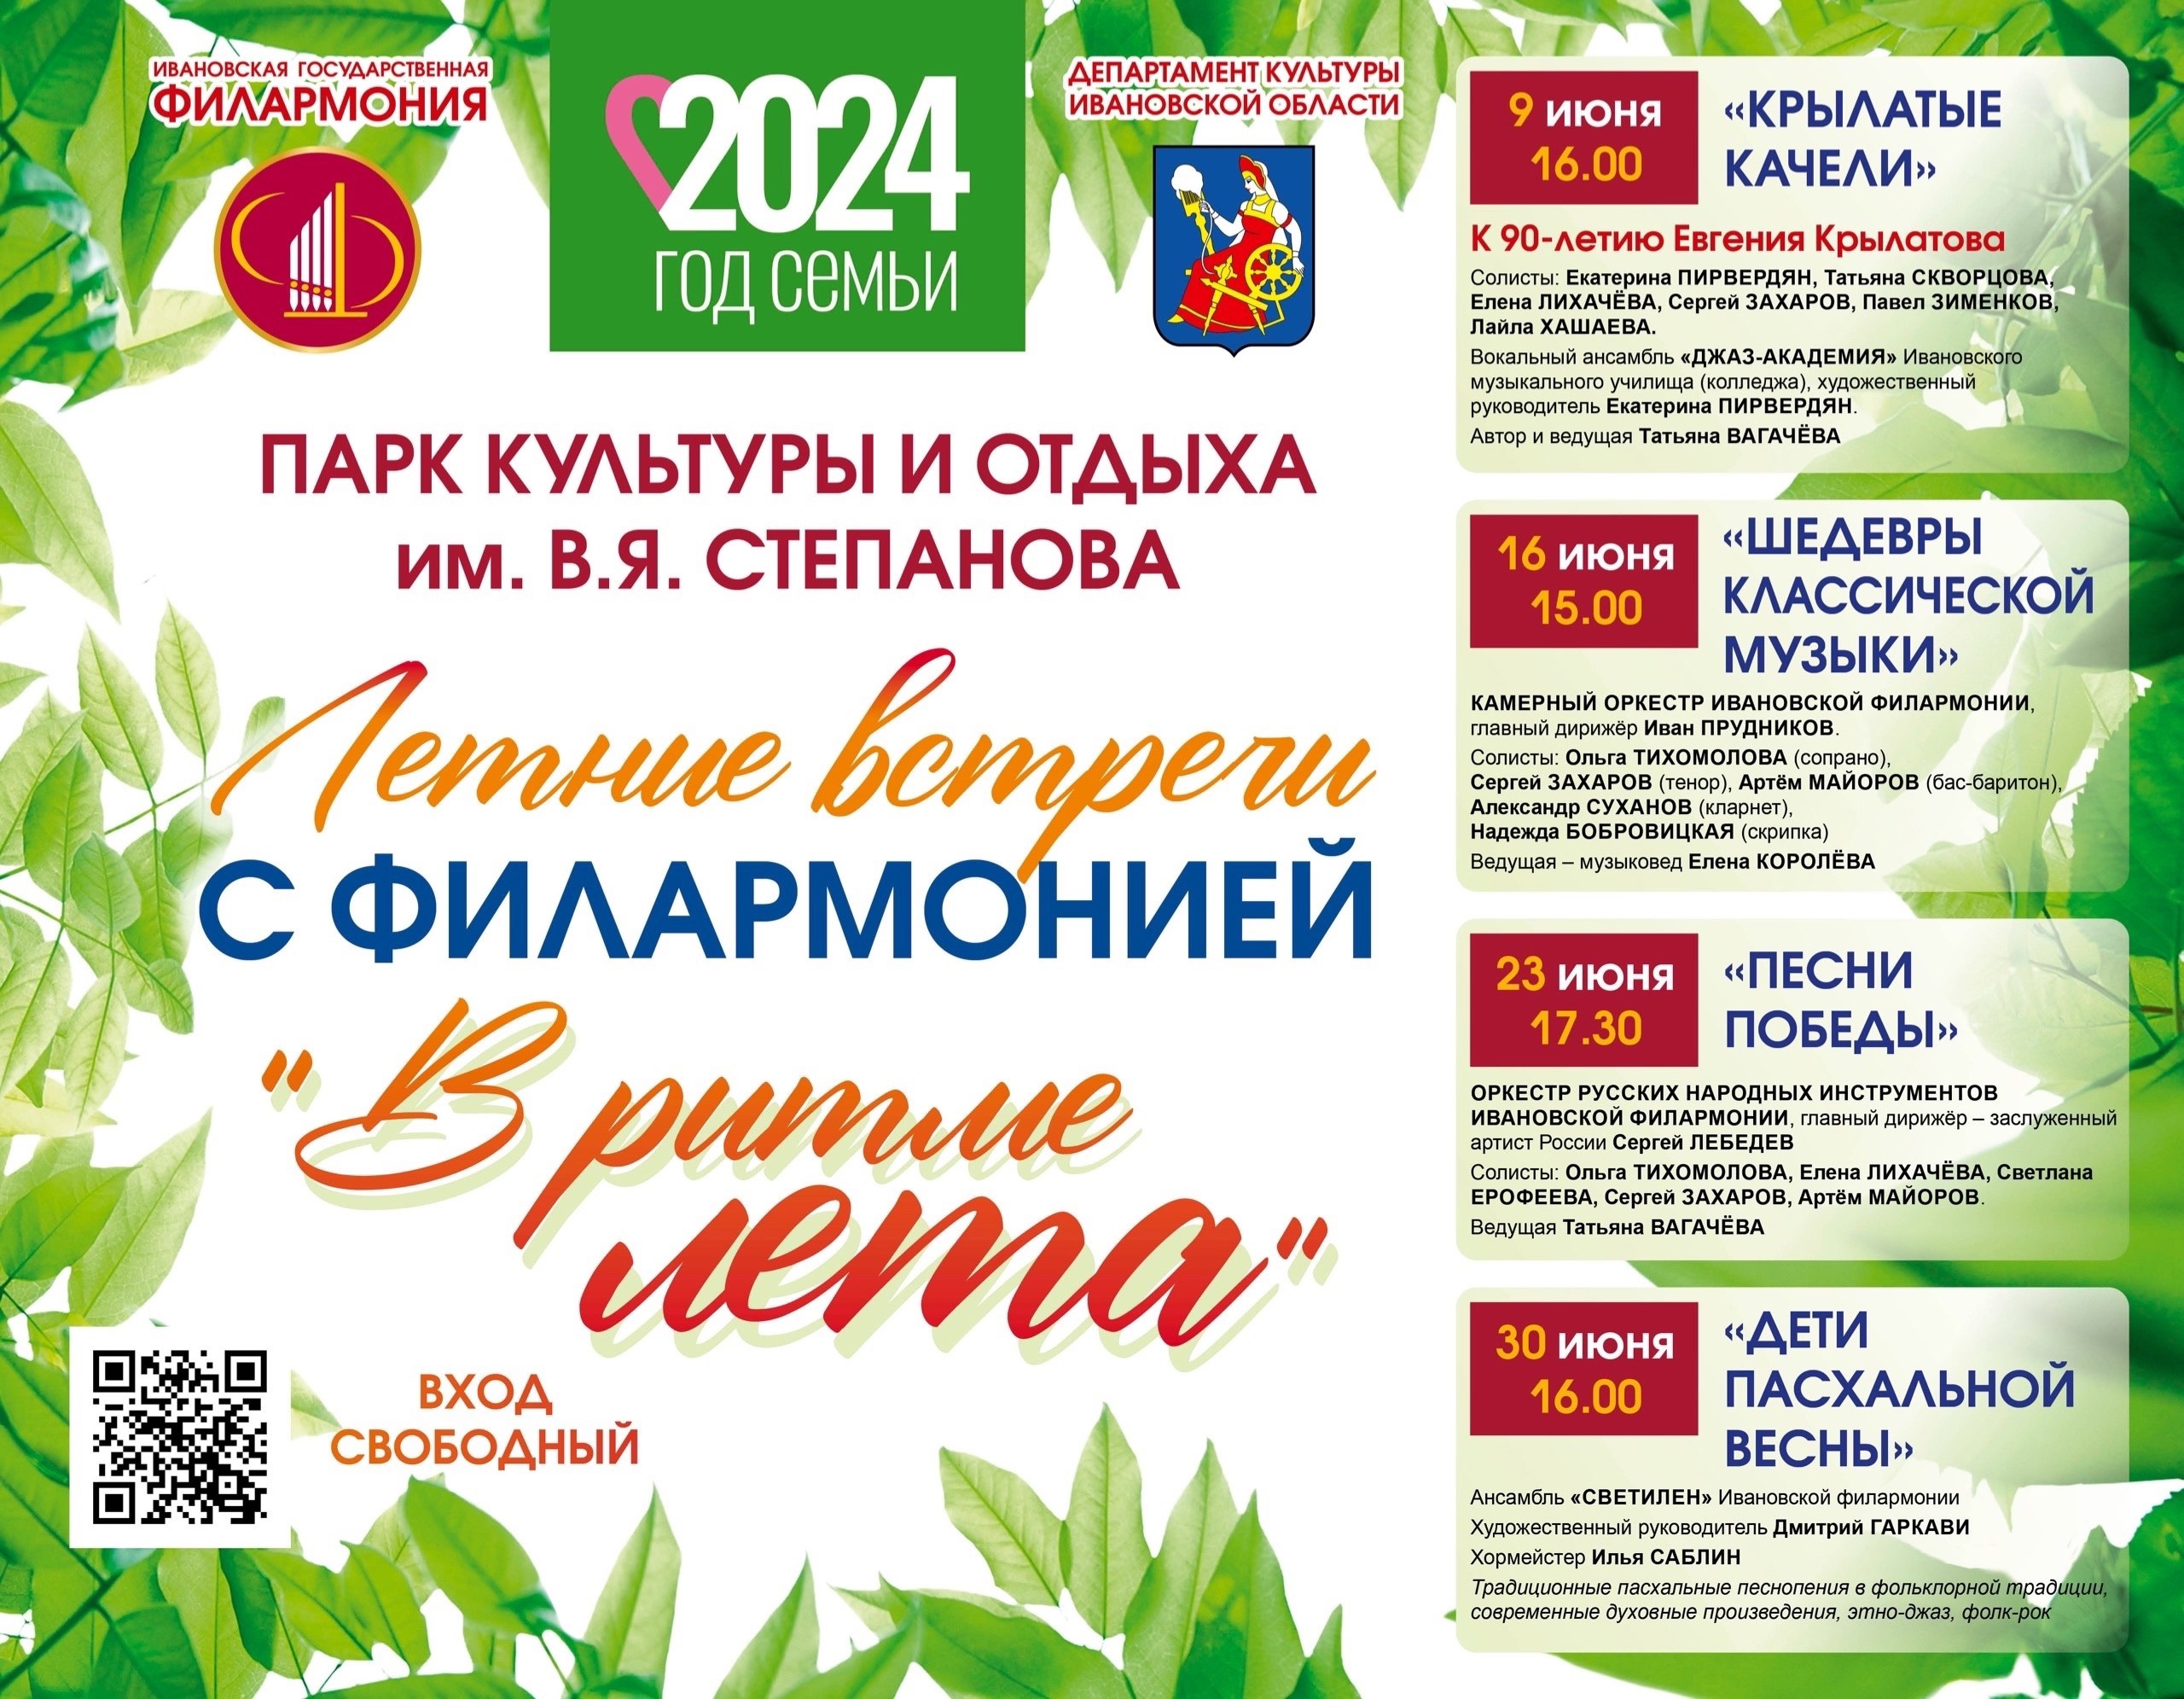 Ивановская филармония вновь открывает свой парковый сезон.